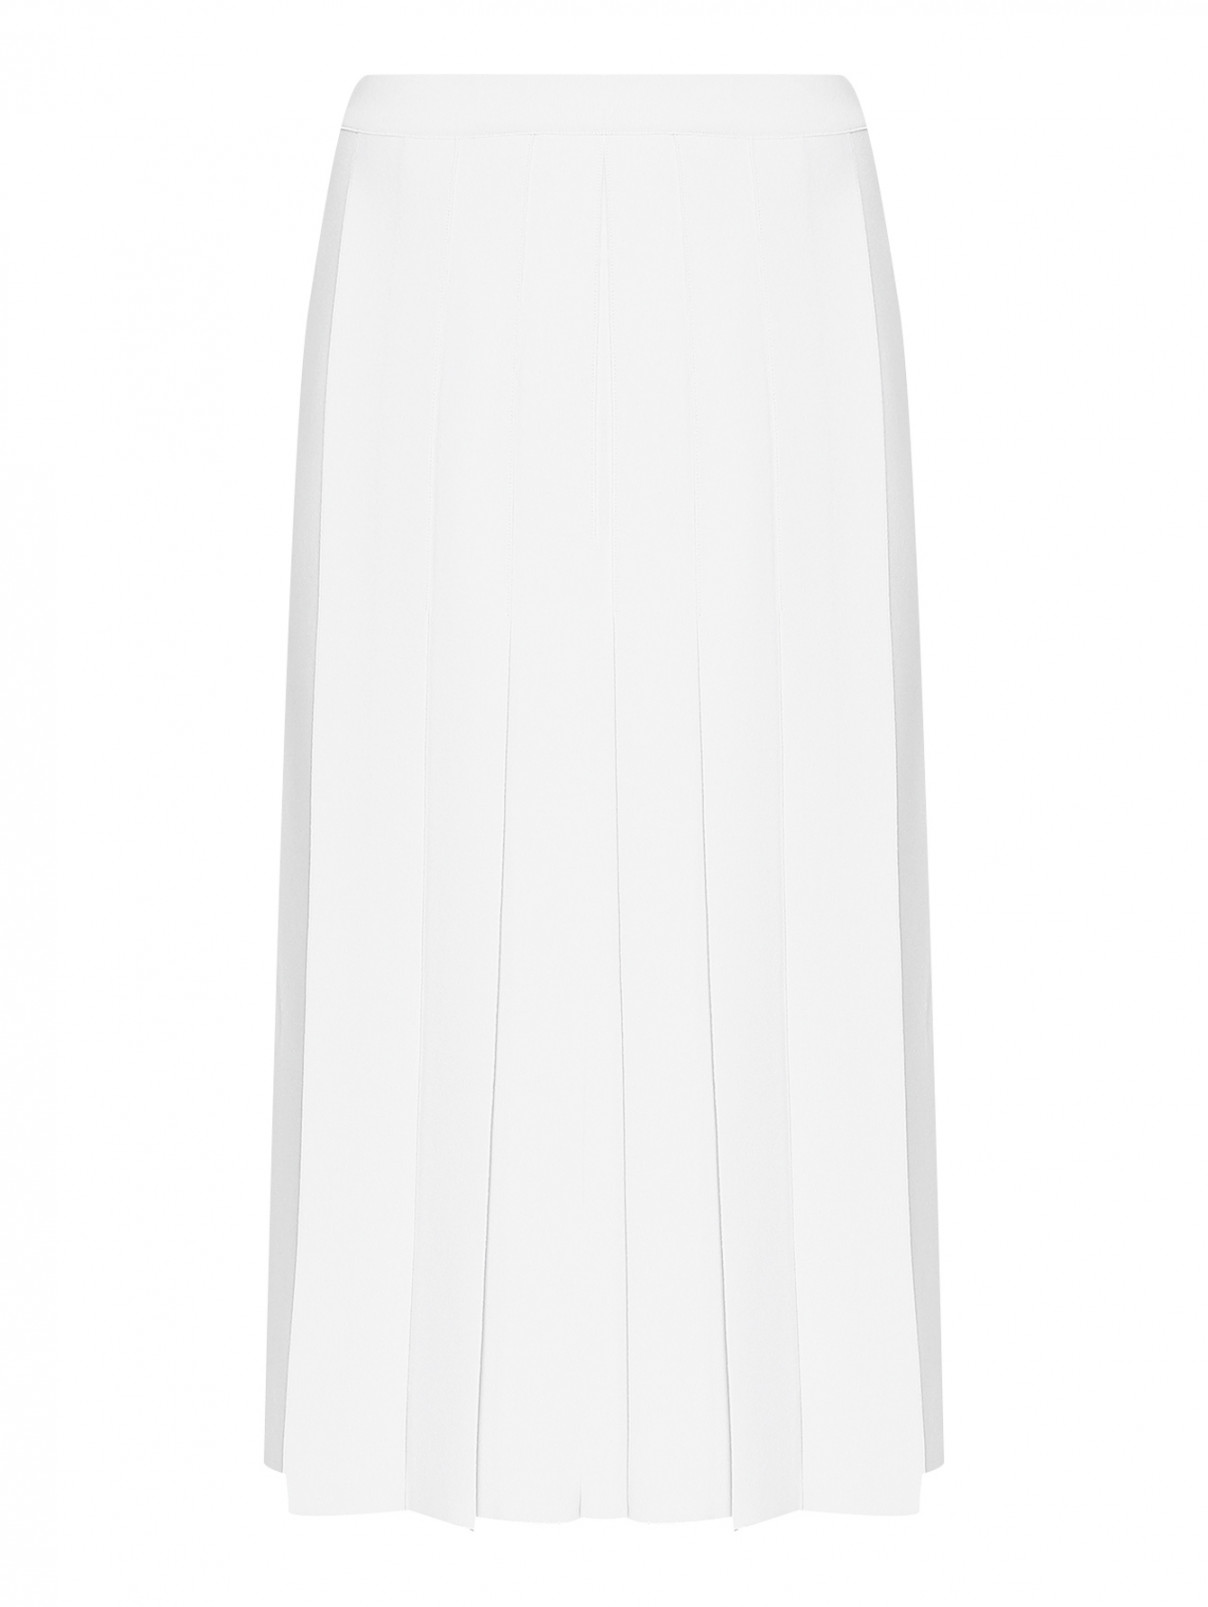 Трикотажная юбка-миди со складками MRZ  –  Общий вид  – Цвет:  Белый